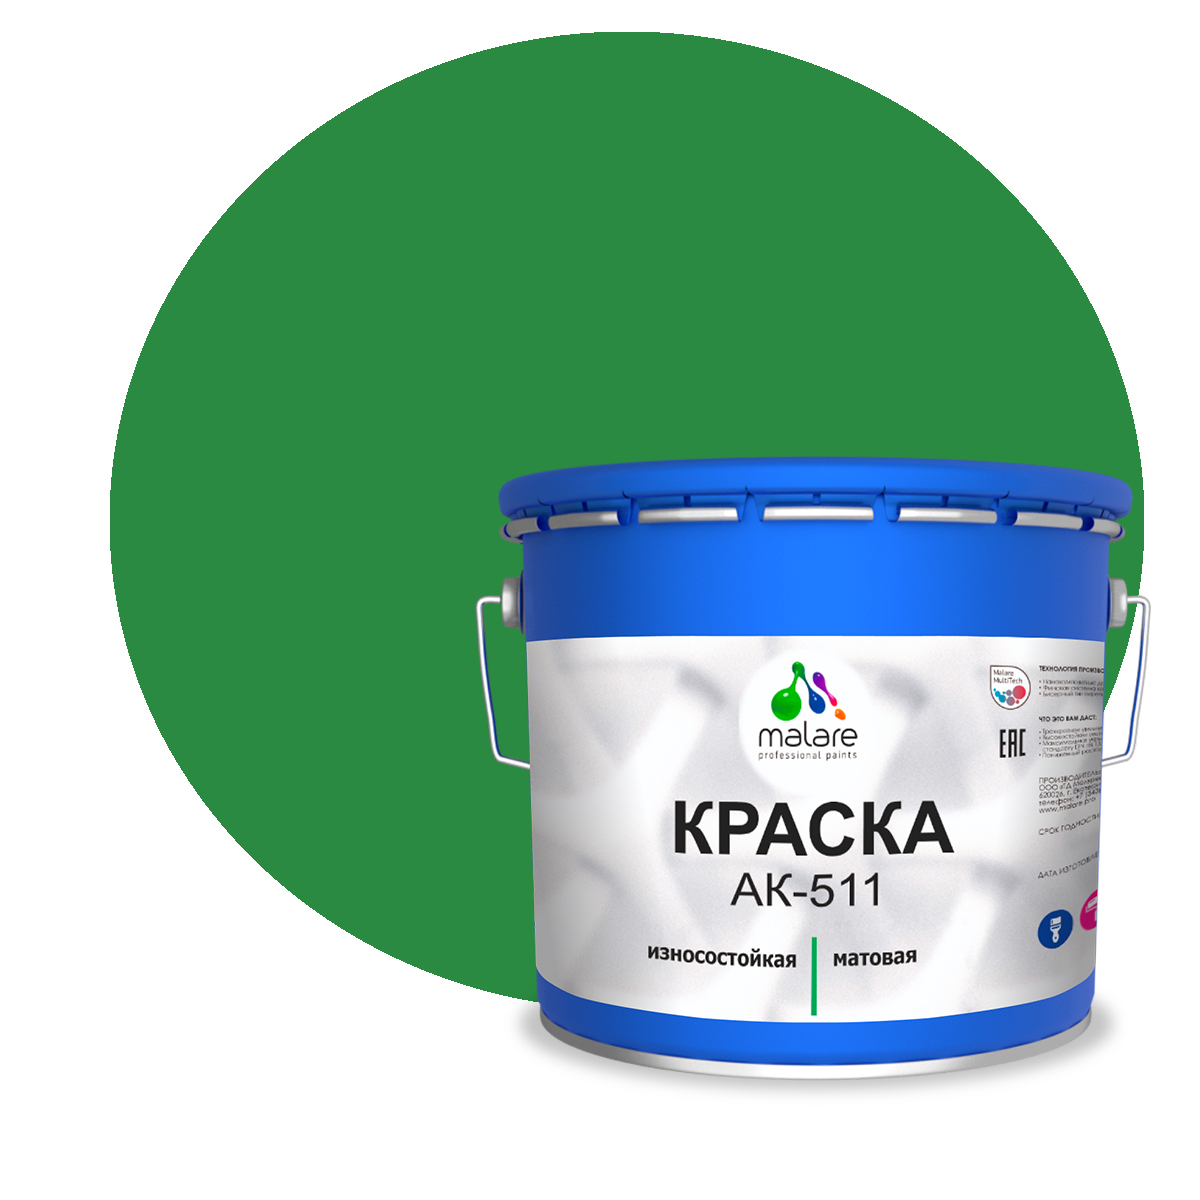 Краска Malare АК-511 для дорожной разметки для пола RAL 6032 зеленый 12,5 кг.